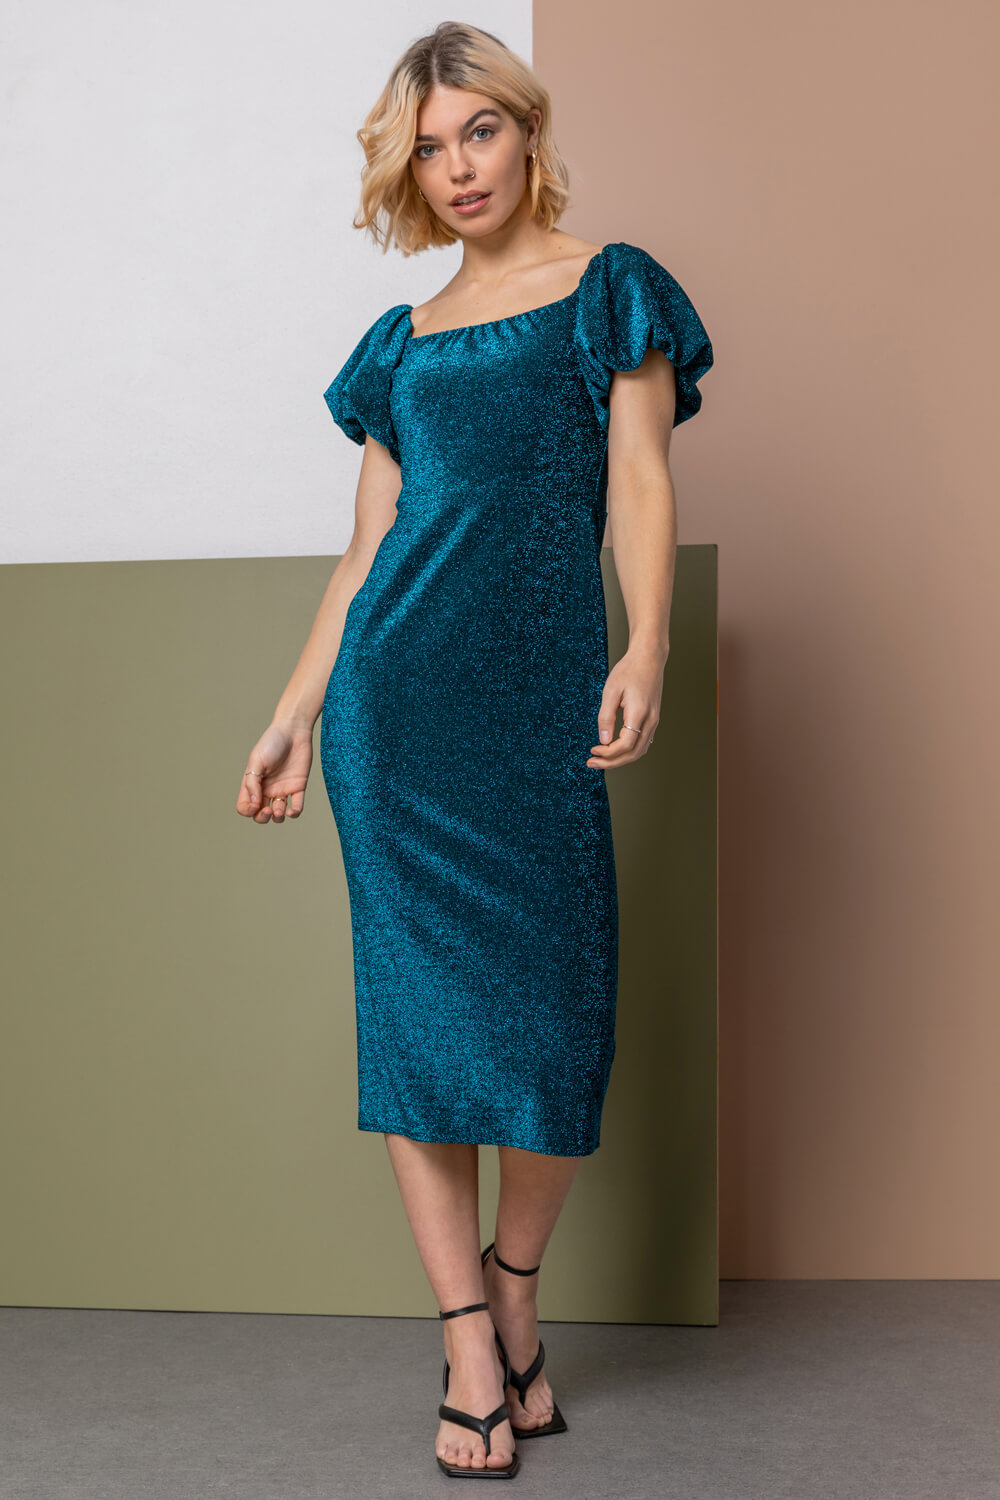 Teal Puff Sleeve Sparkle Midi Dress, Image 4 of 6